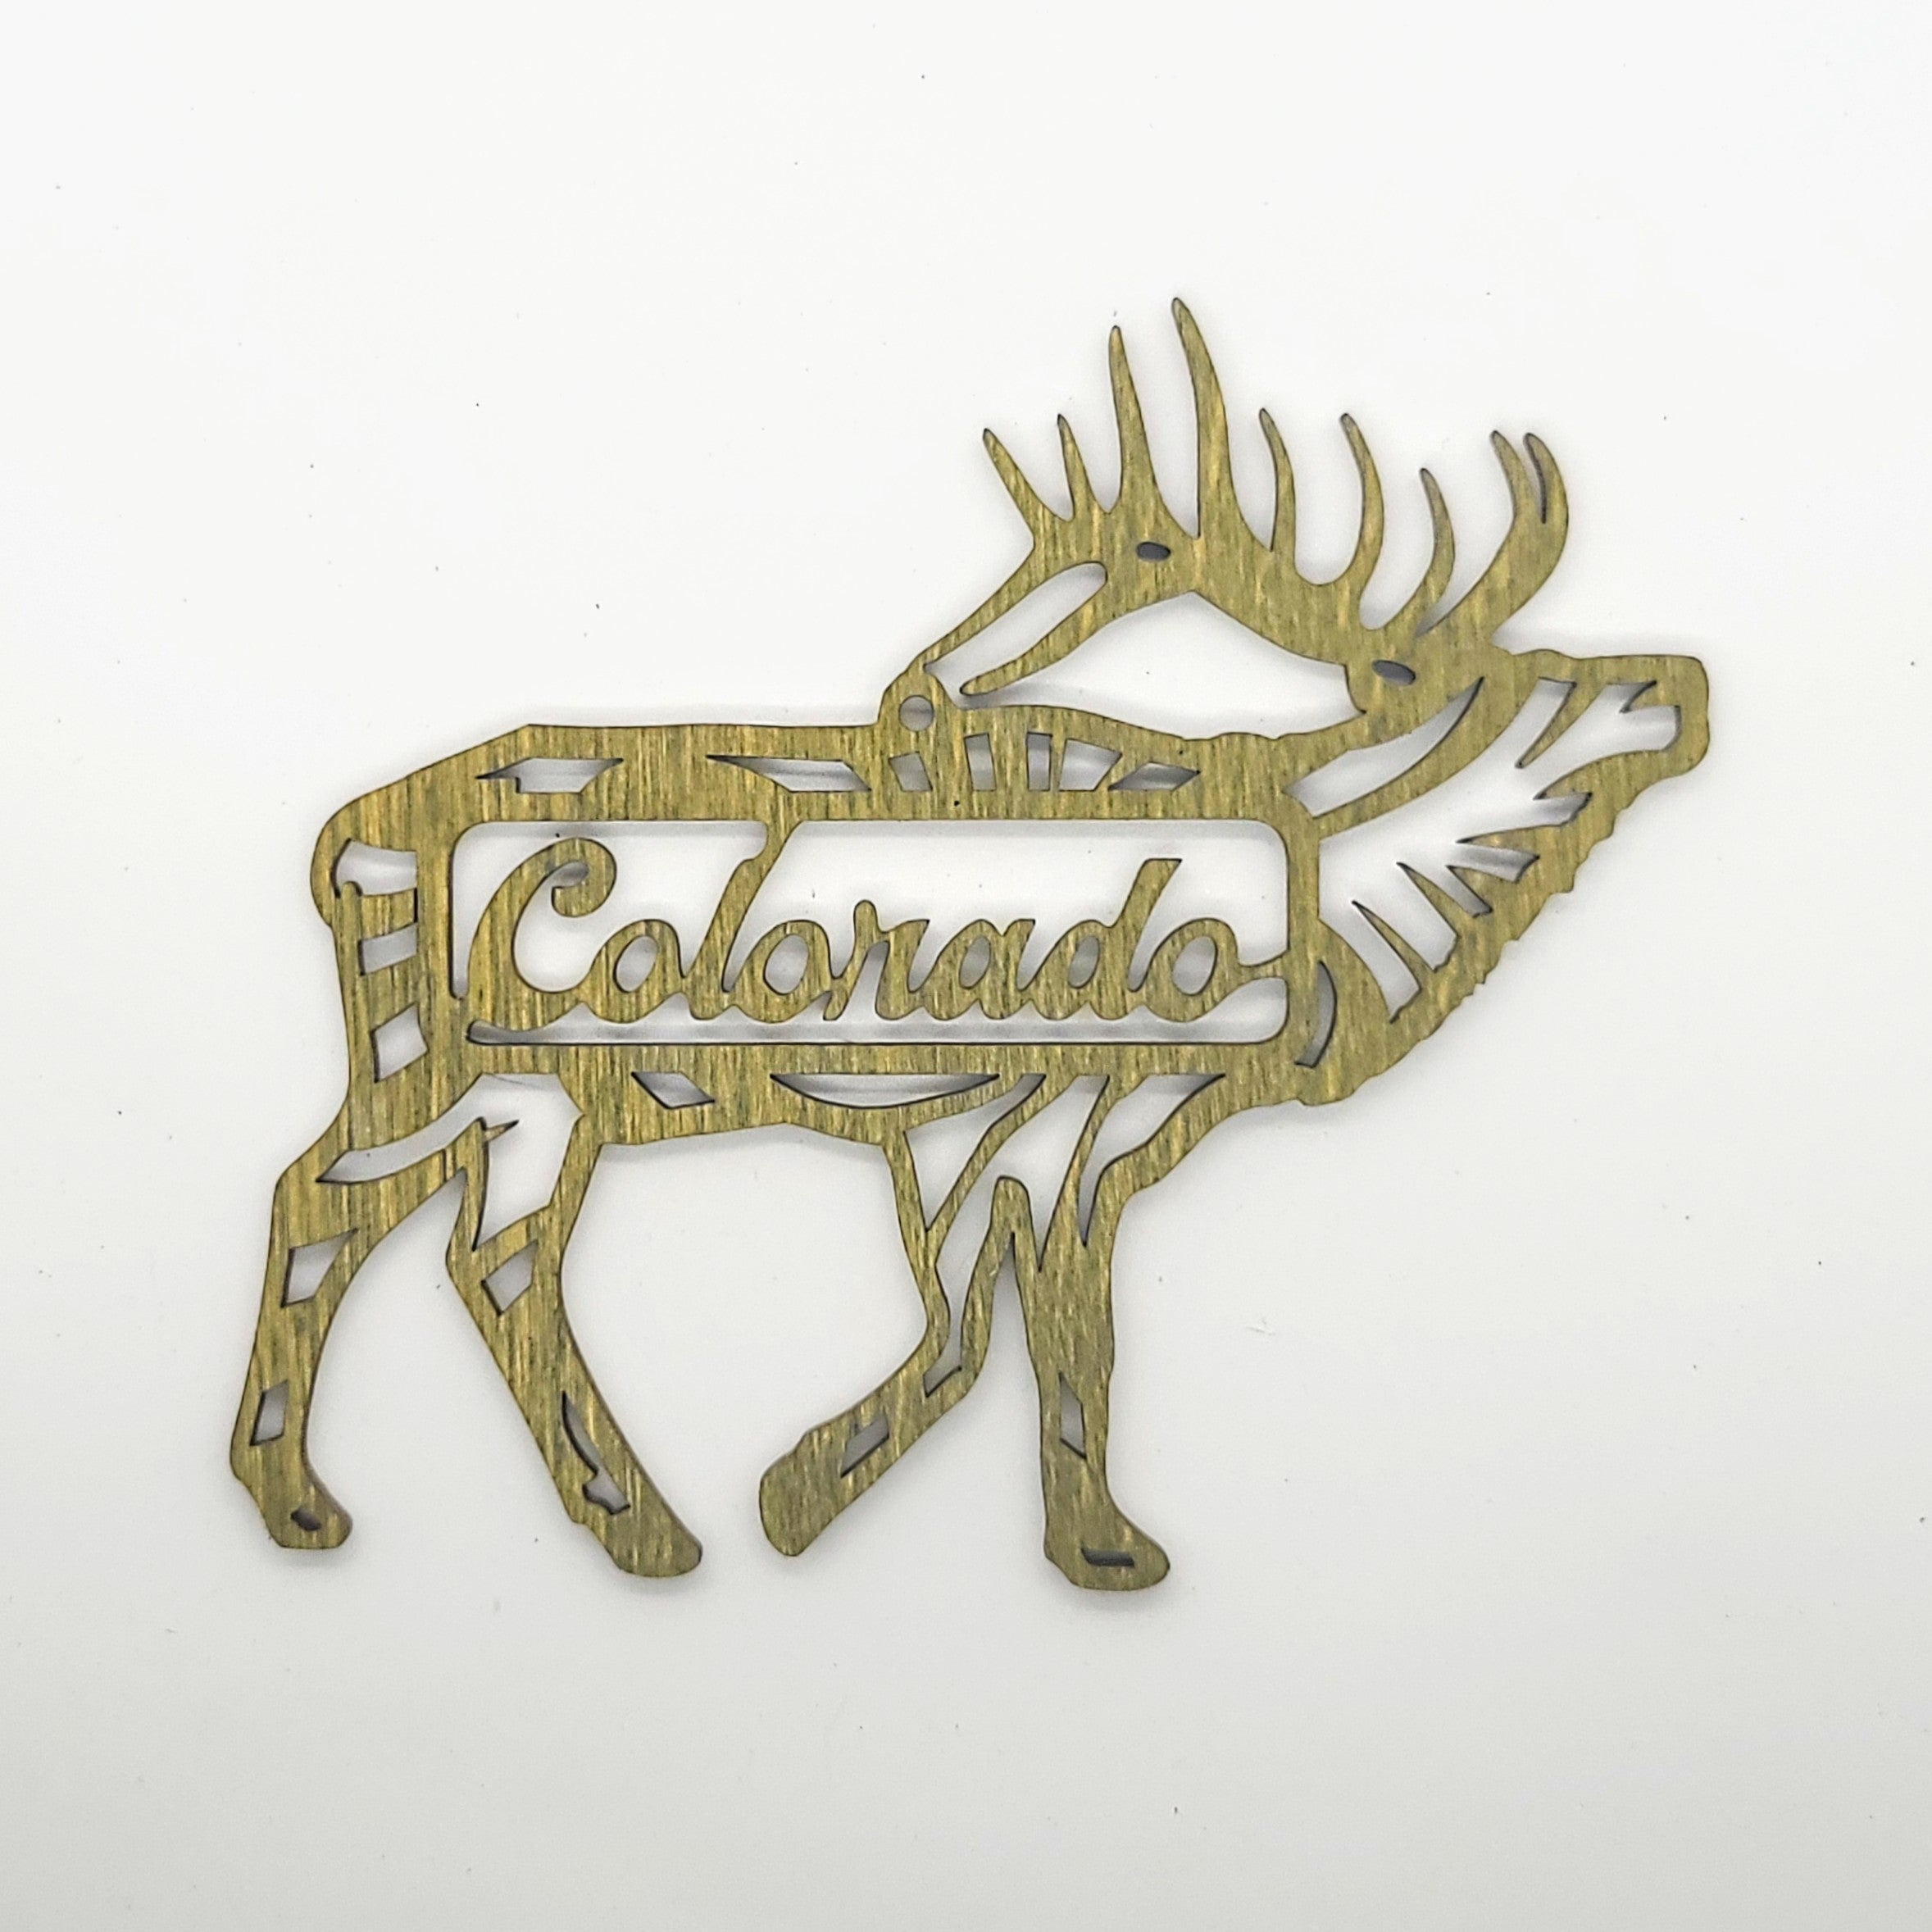 Colorado Elk Ornament